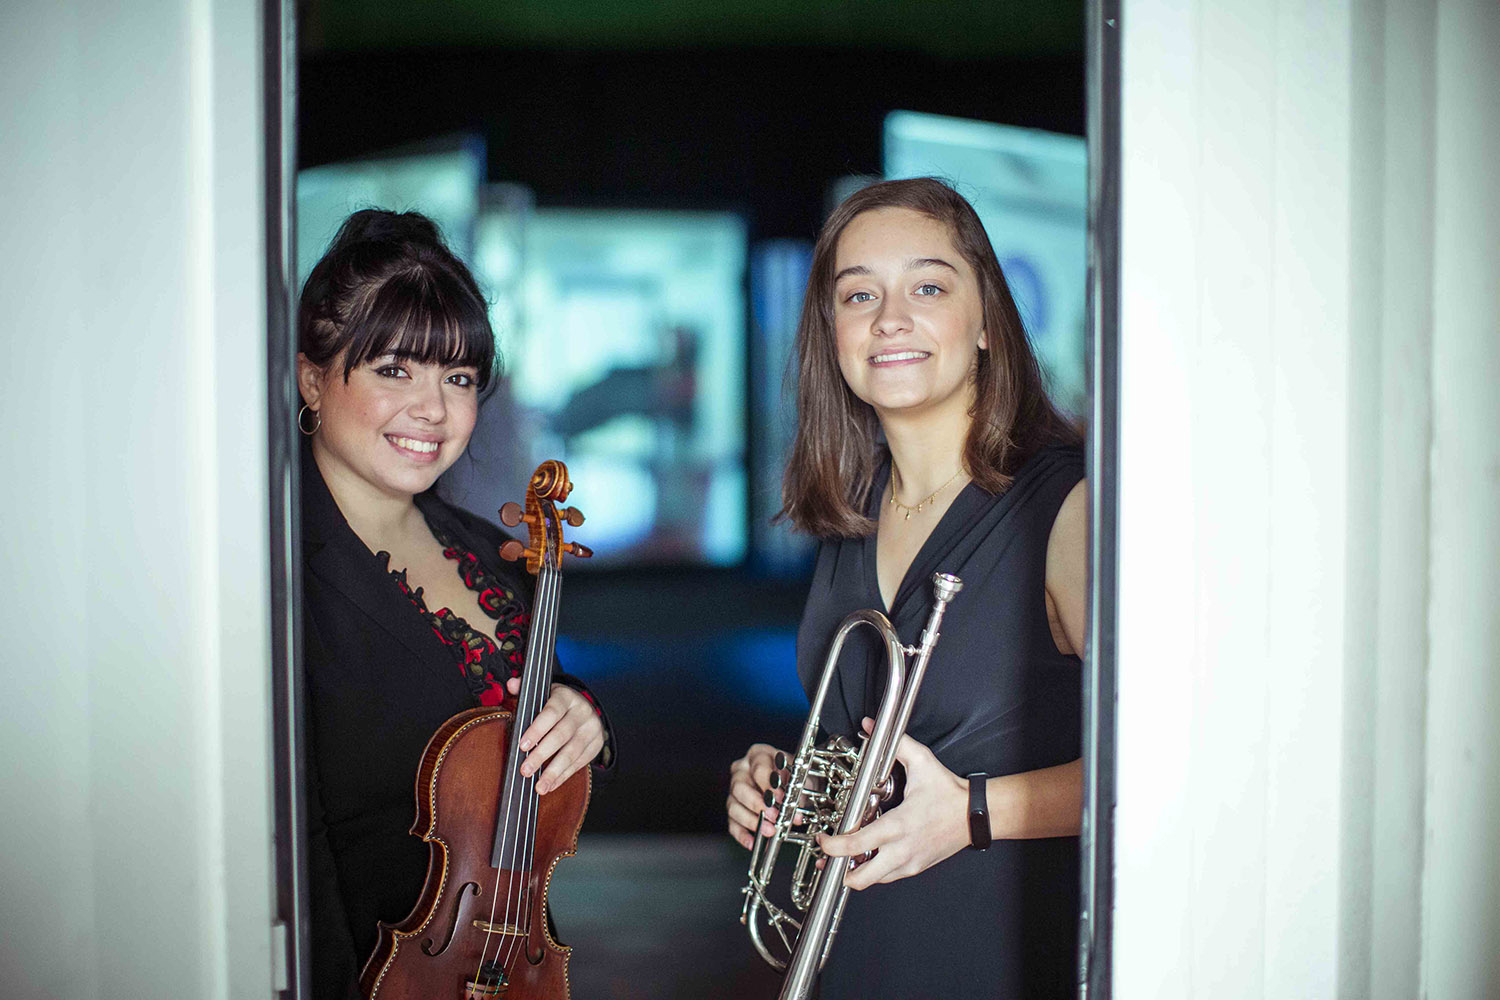 Fundación Mutua apoya la formación de jóvenes en música clásica a través de su colaboración con la Escuela Superior de Música reina Sofía- Blog Vidas Cruzadas